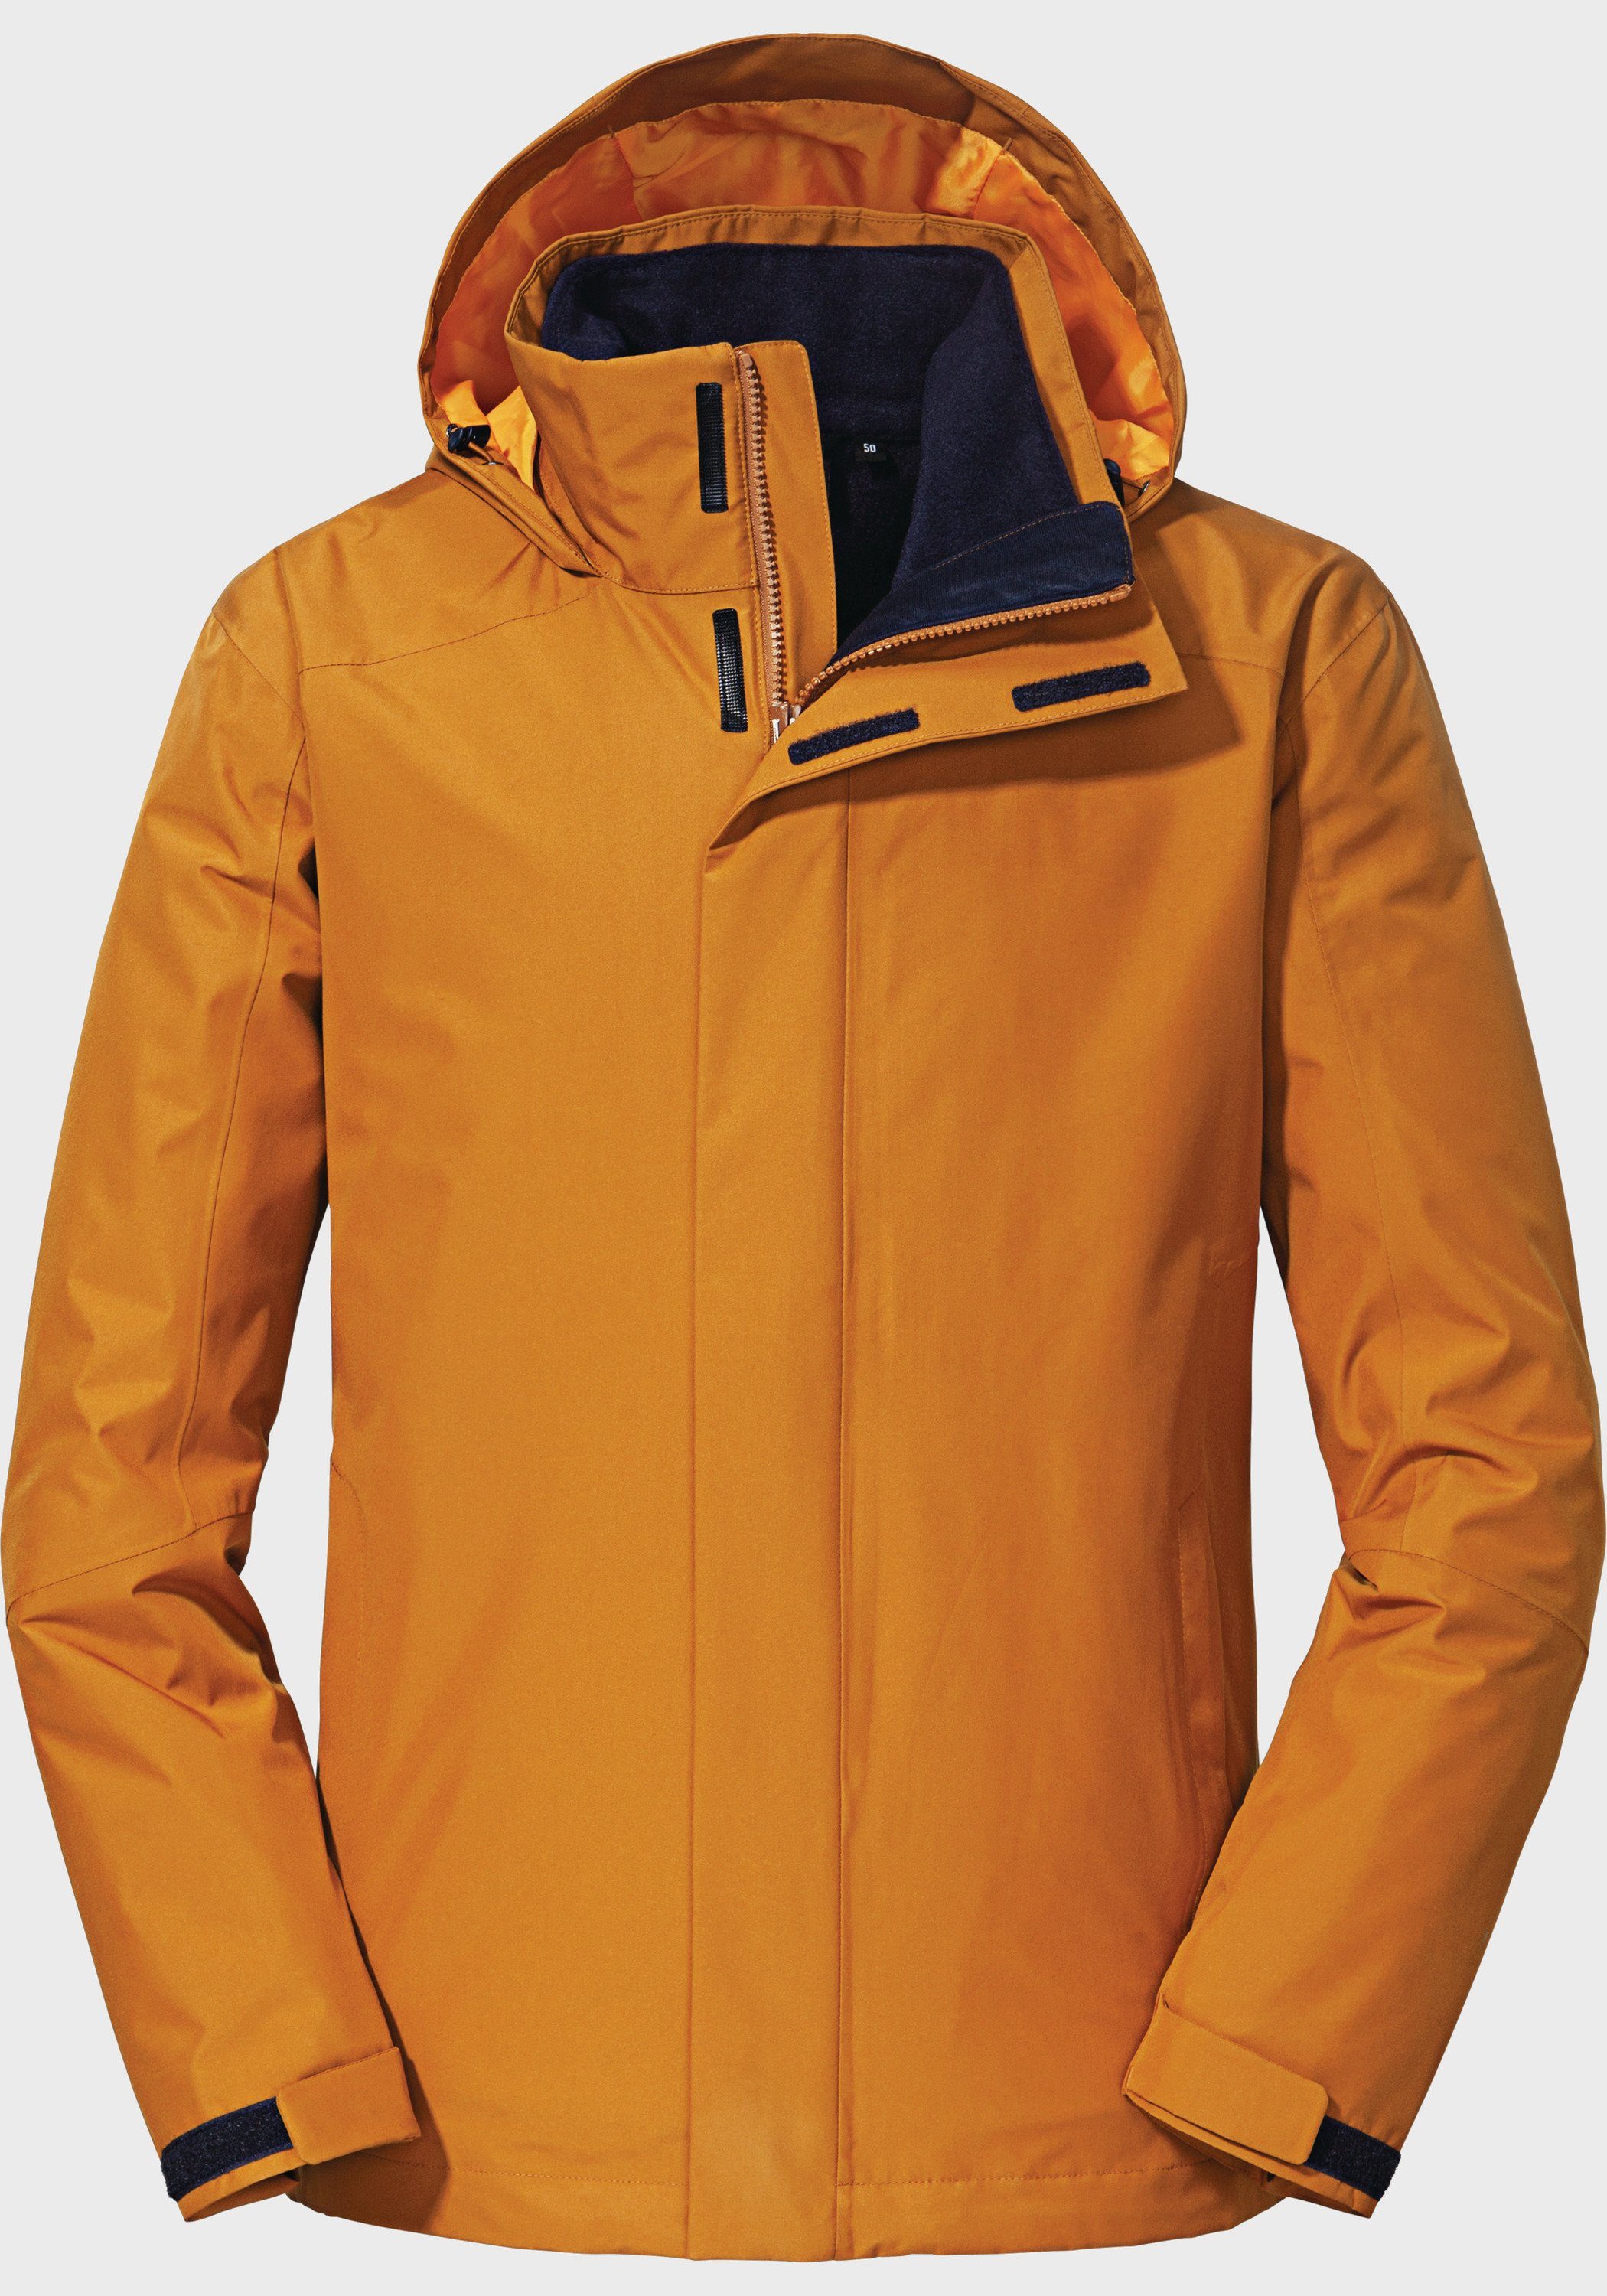 Doppeljacke Schöffel orange 3in1 Jacket Partinello M